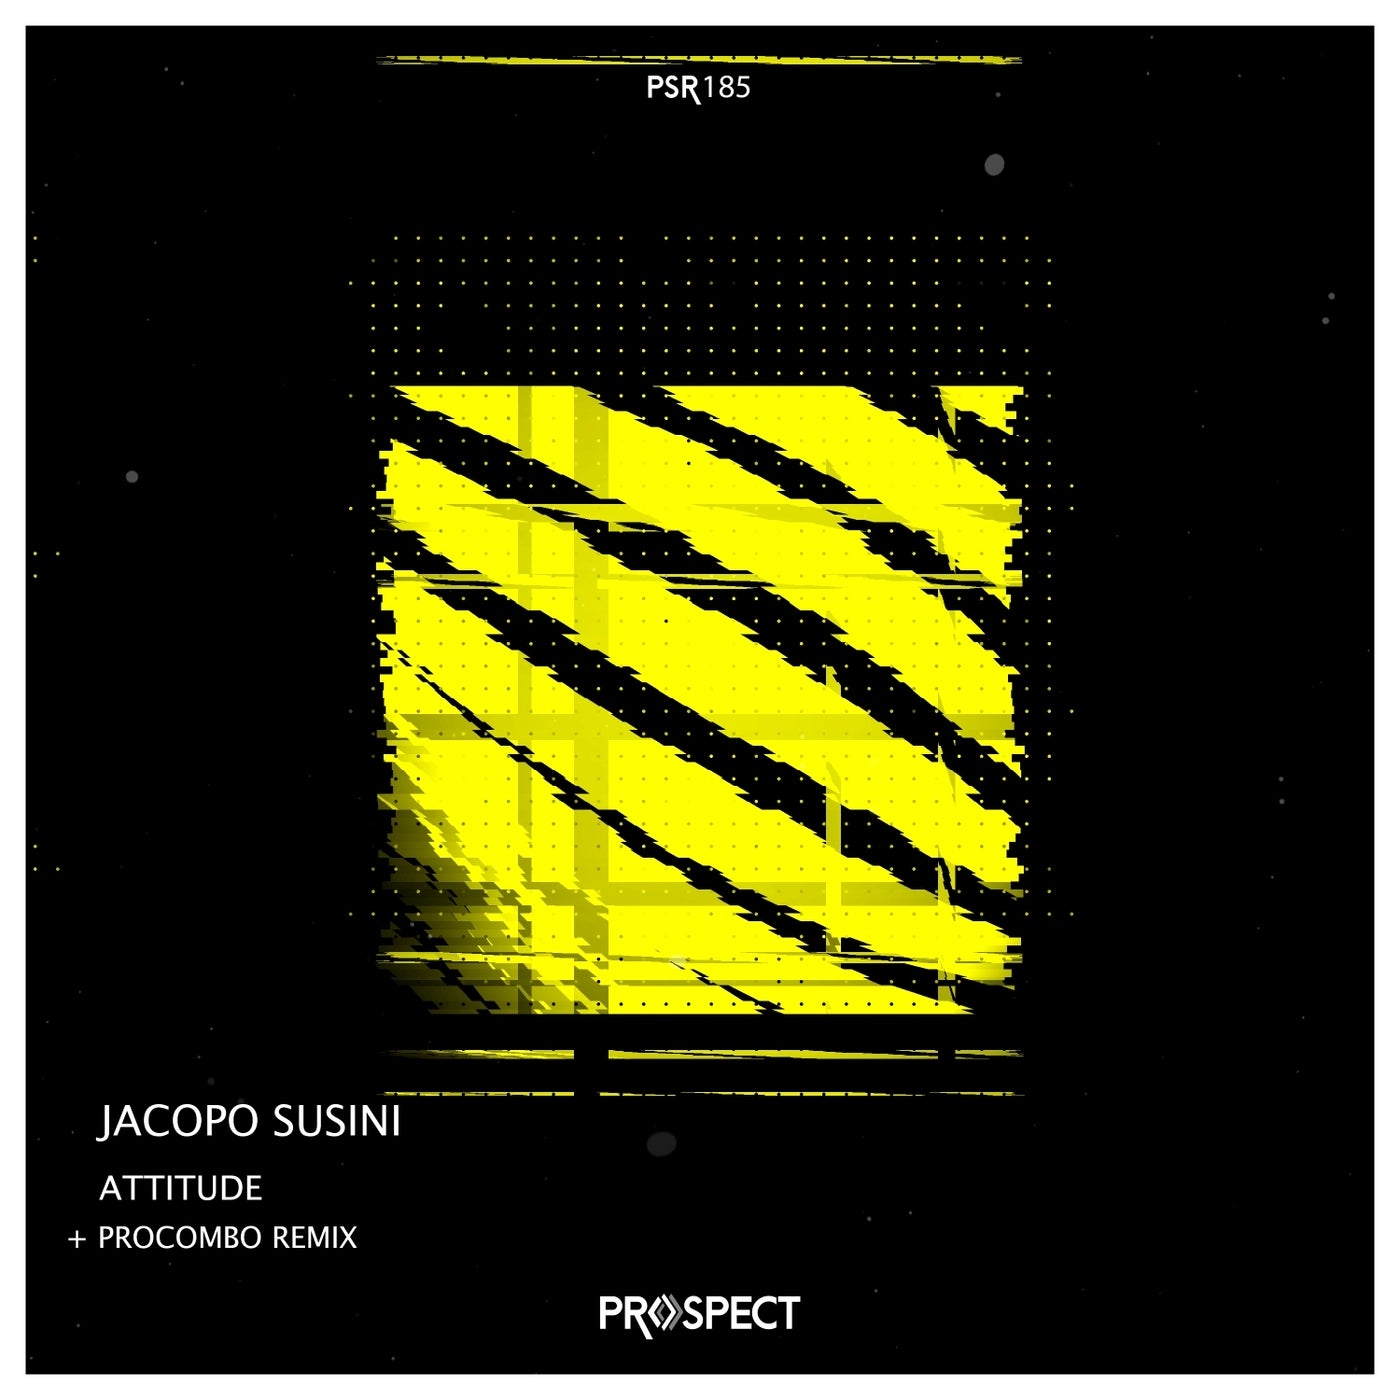 image cover: Jacopo Susini - Attitude on Prospect Records